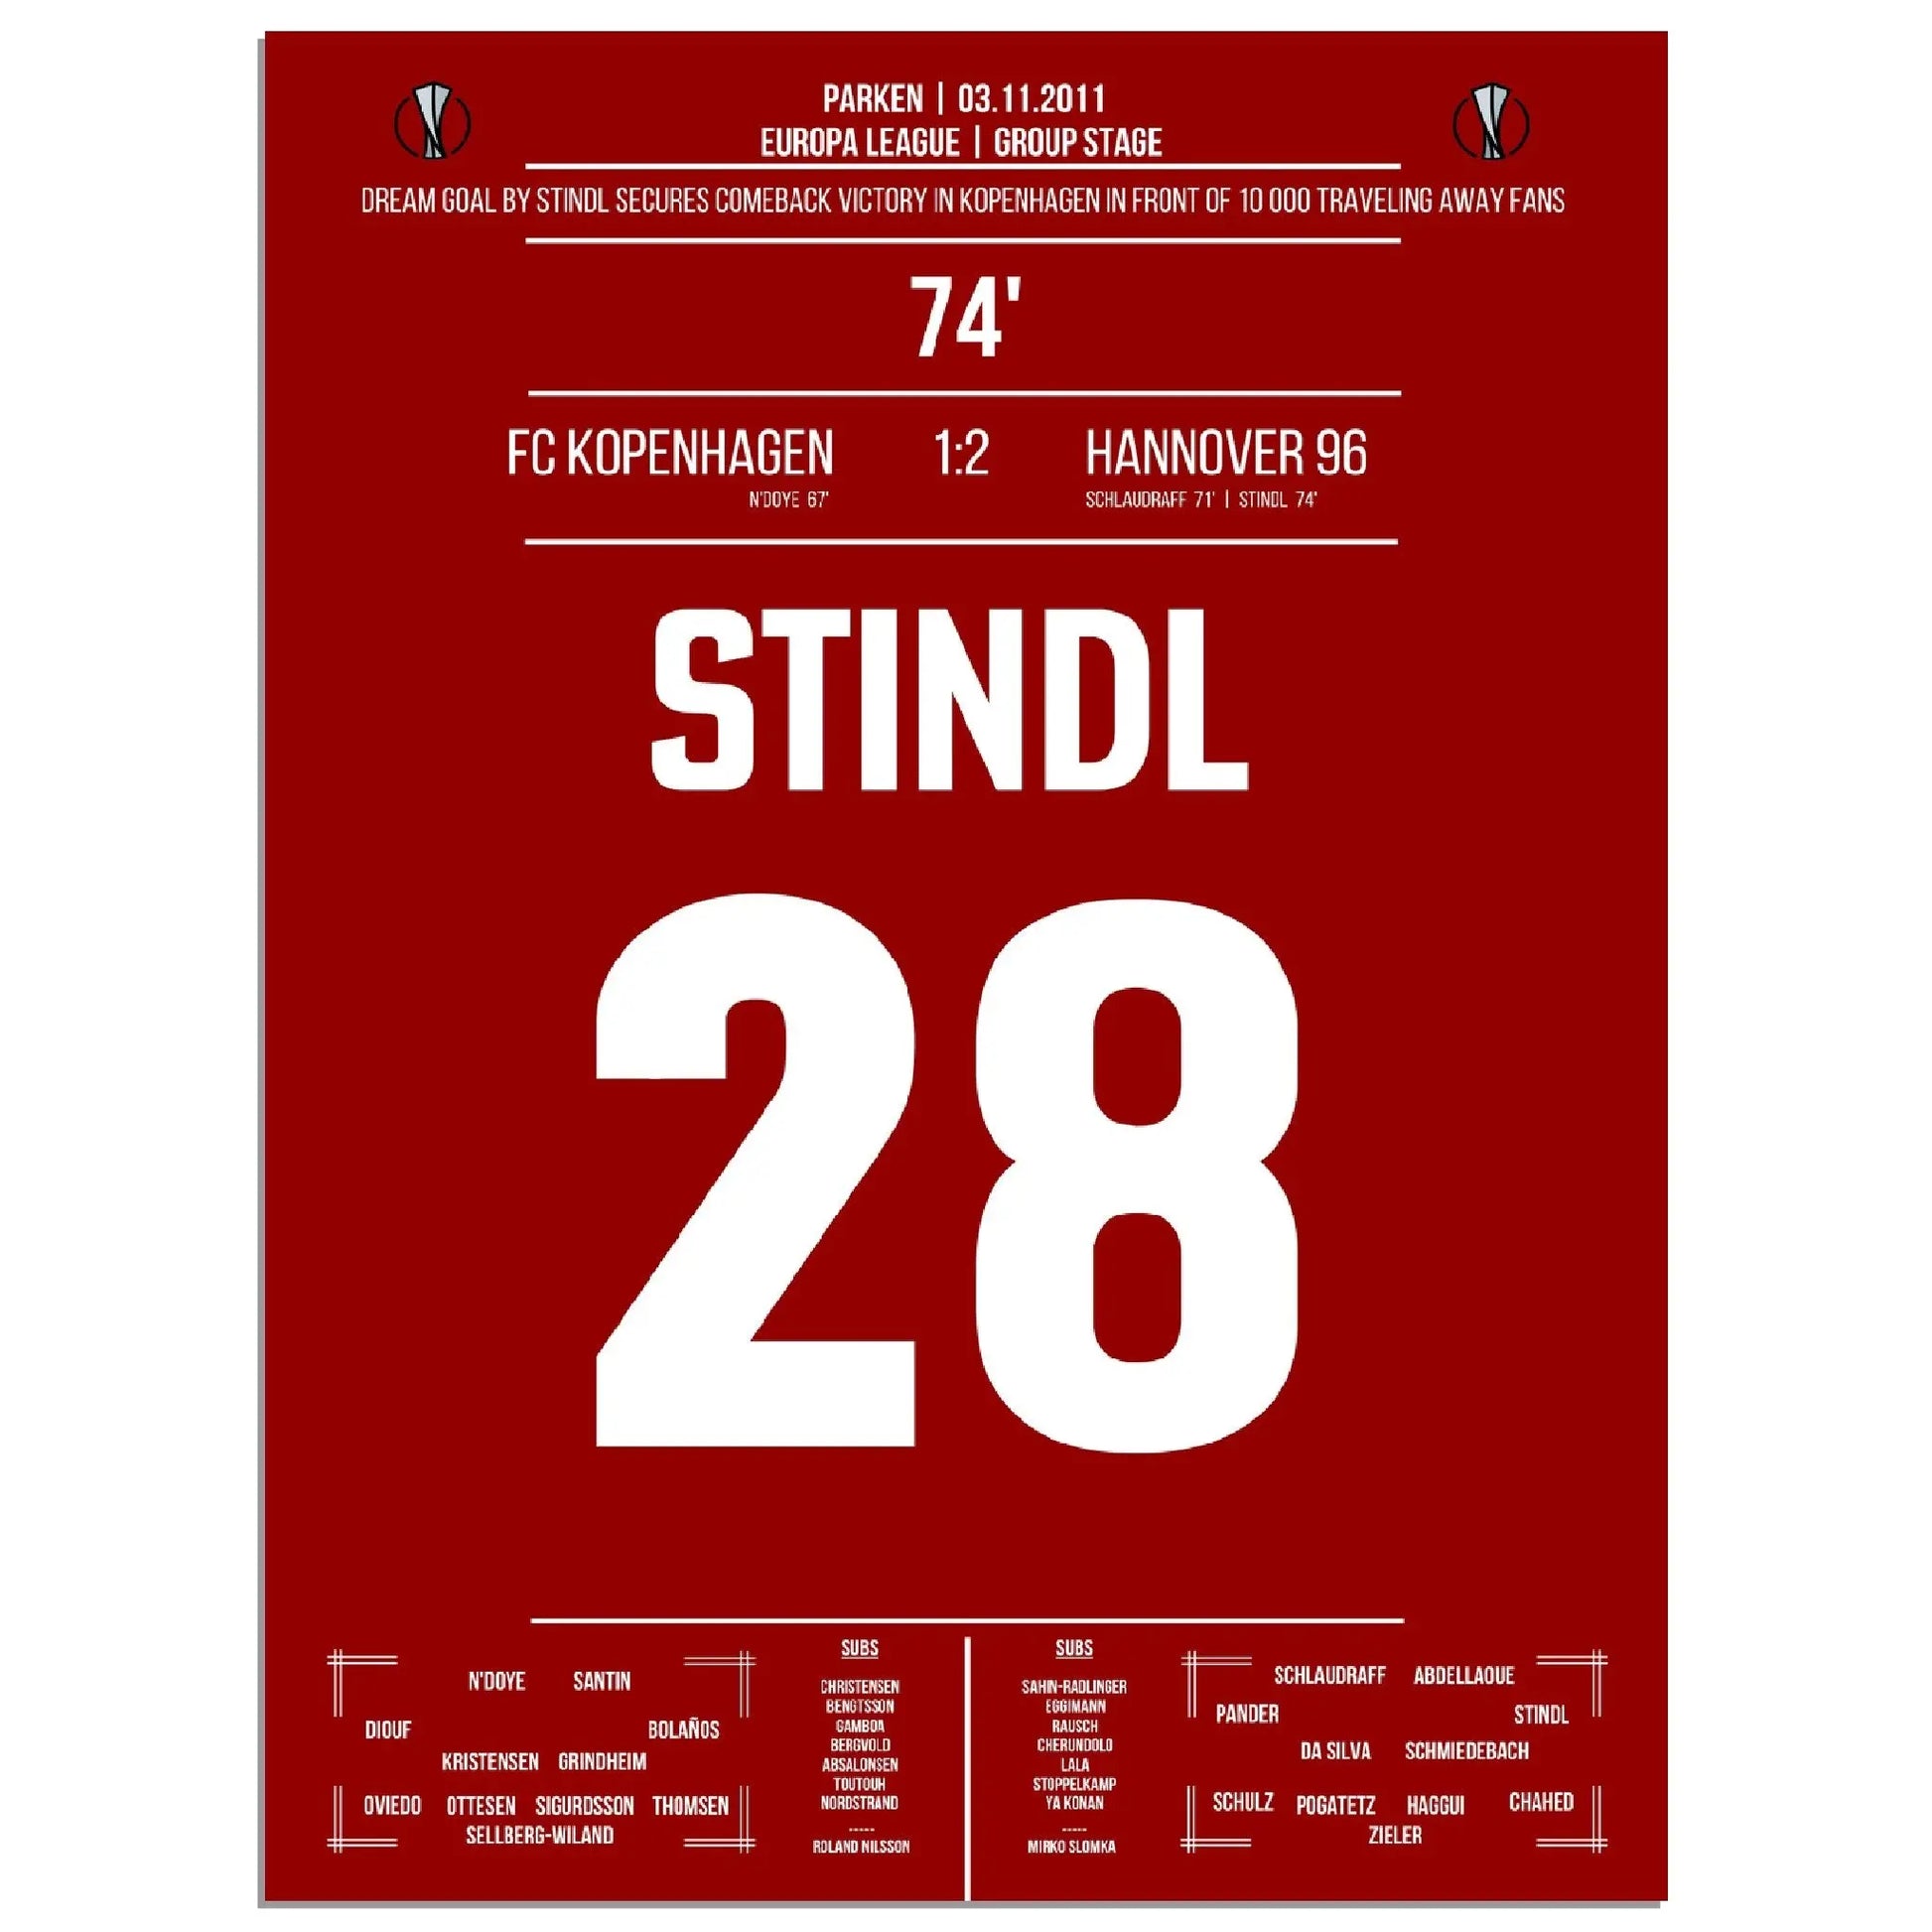 Stindl's Traumtor für Hannover in der Europa League 